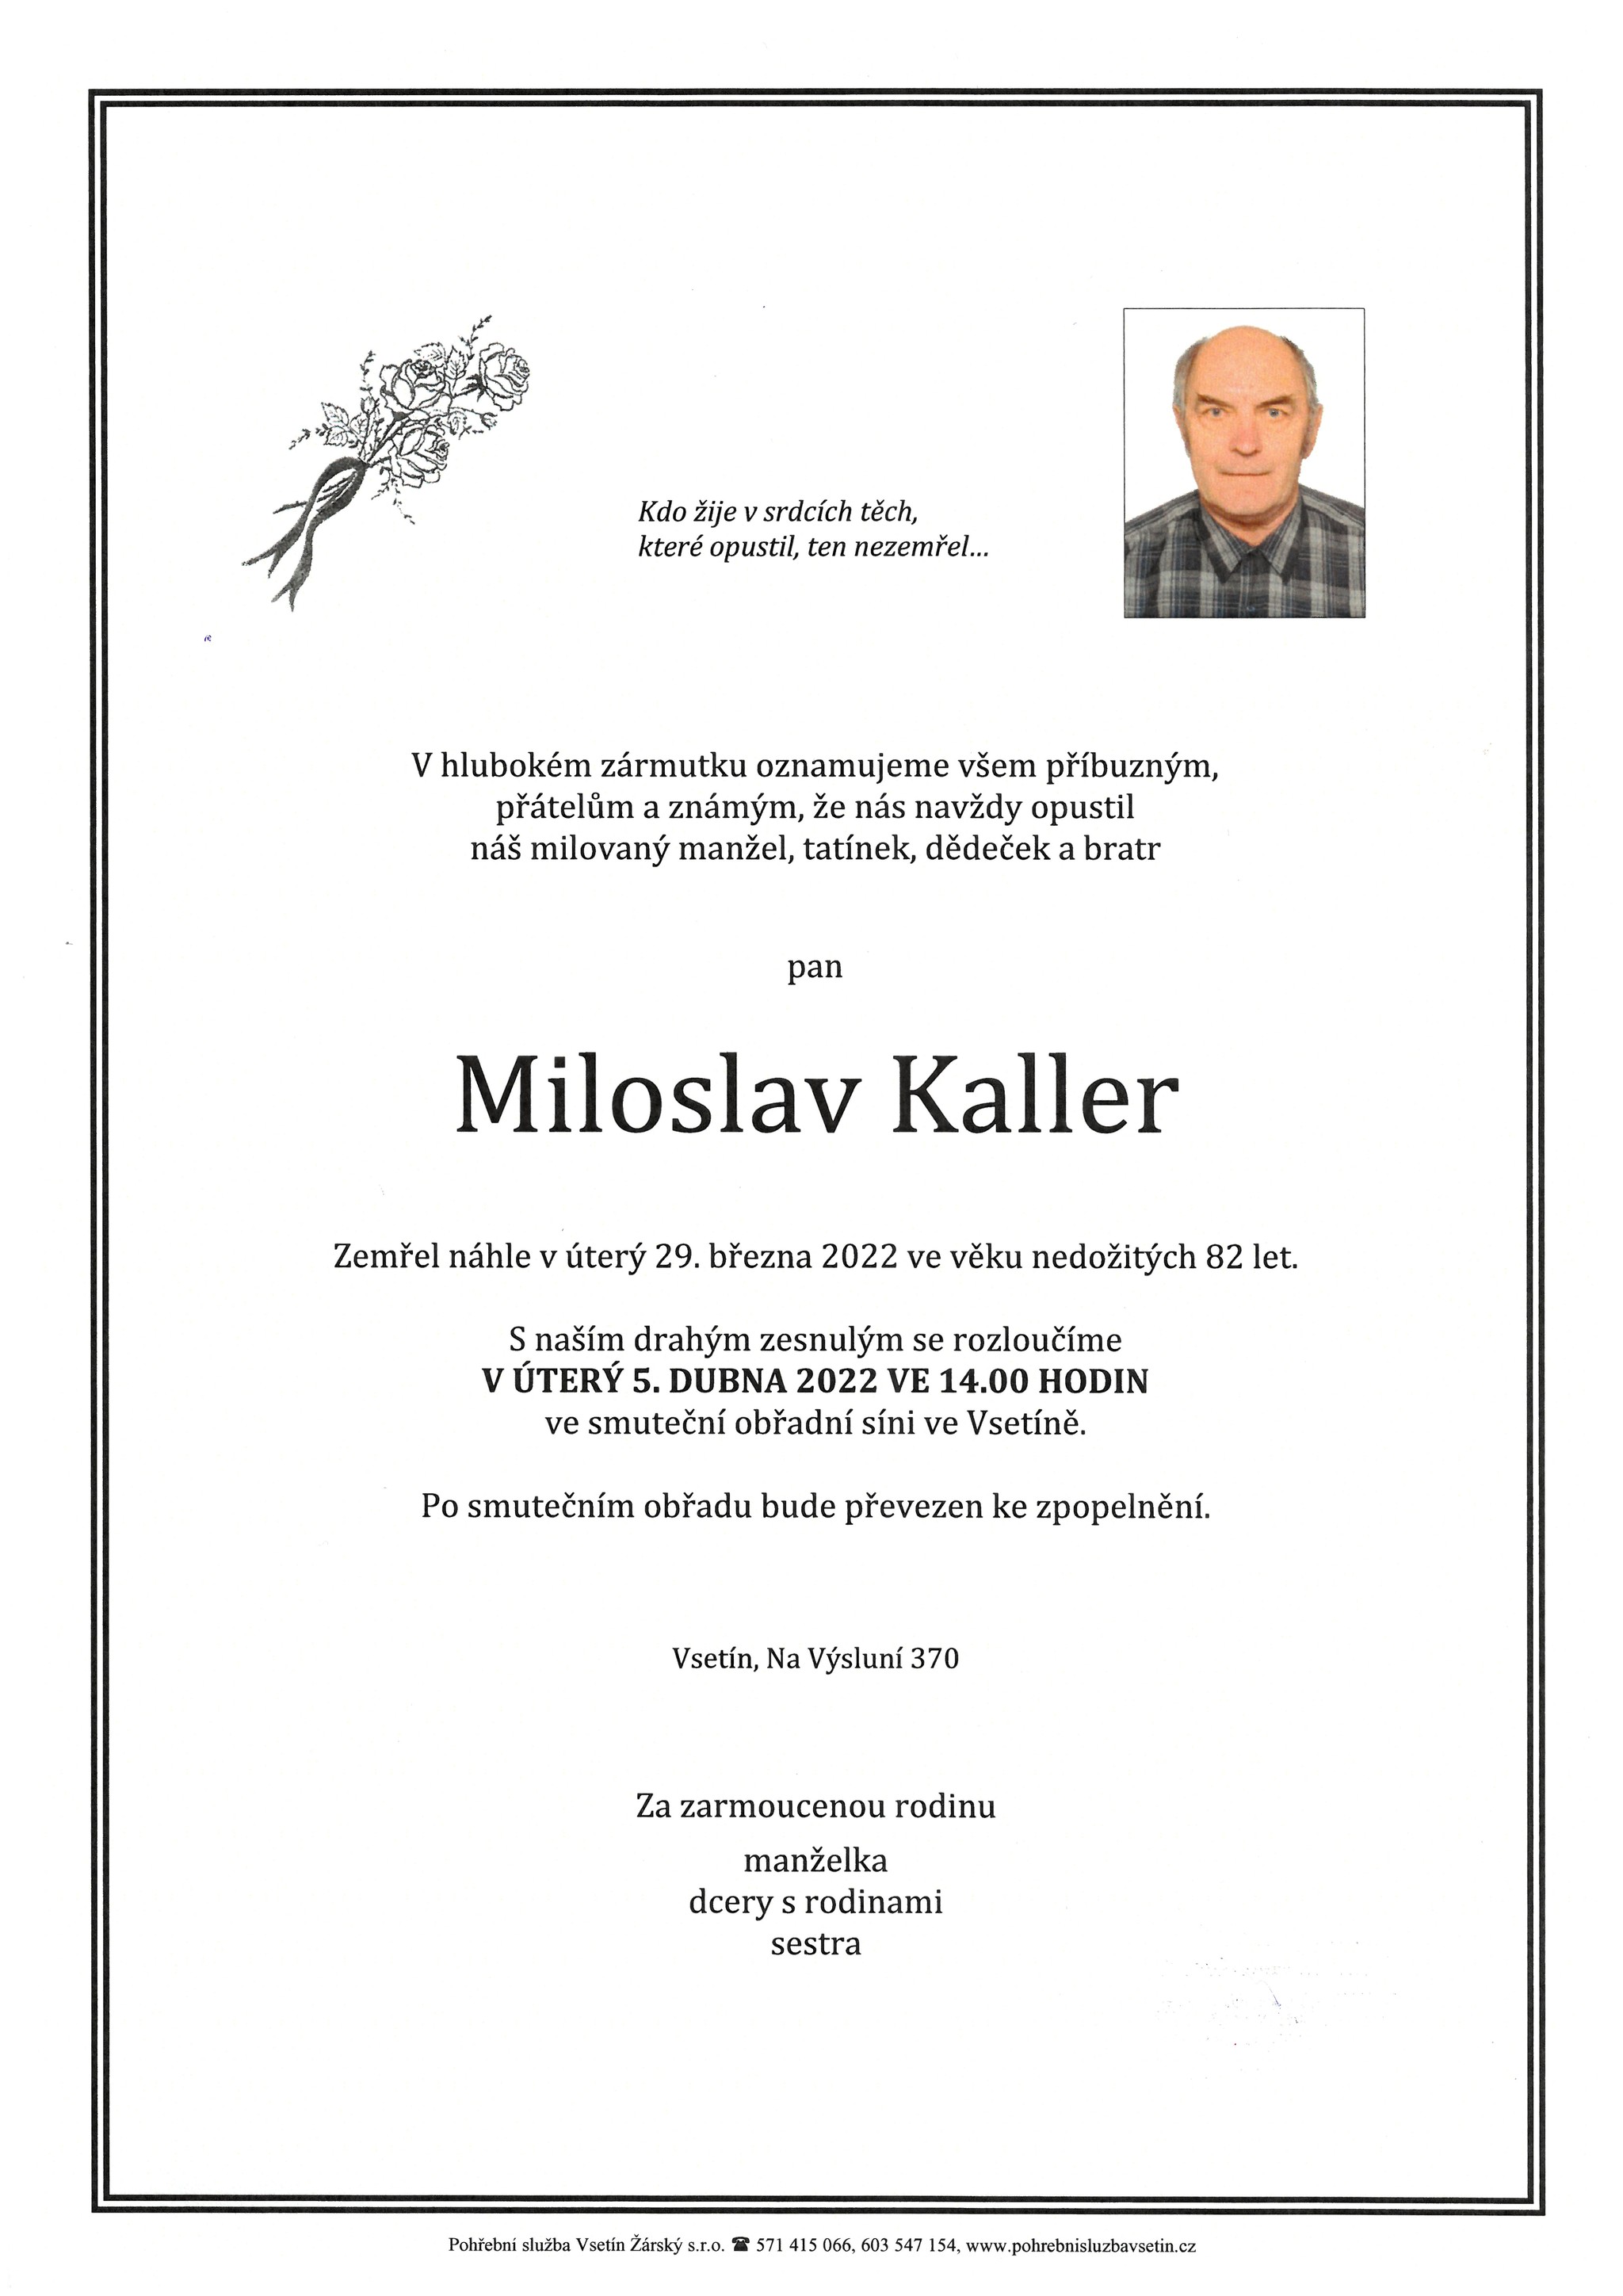 Miroslav Kaller